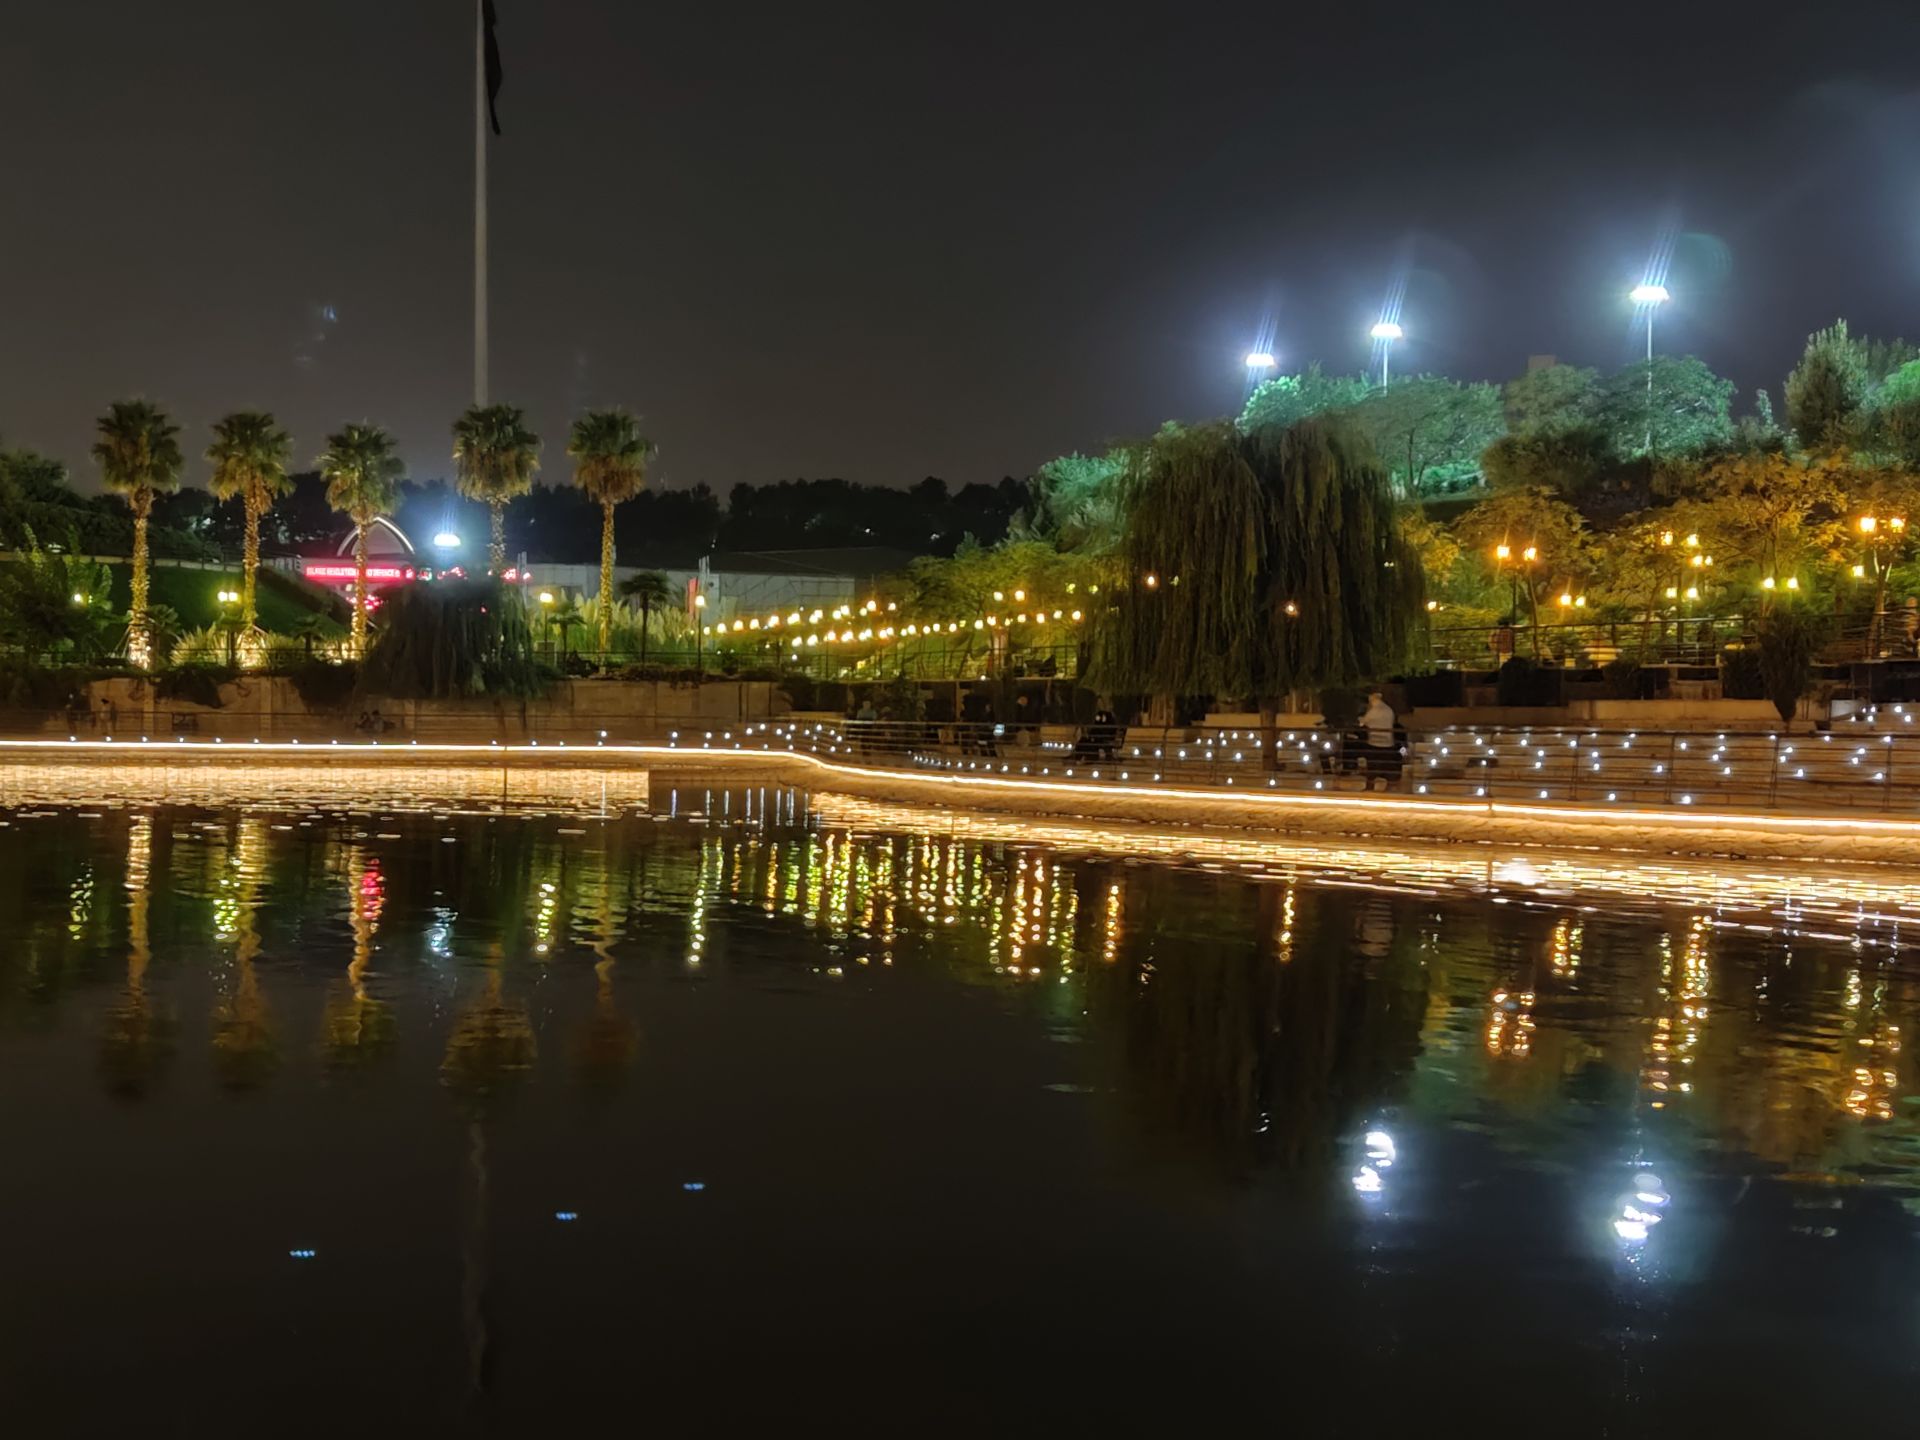 نمونه عکس 2X دوربین اصلی شیائومی می 10 در محیط کم نور - دریاچه باغ کتاب